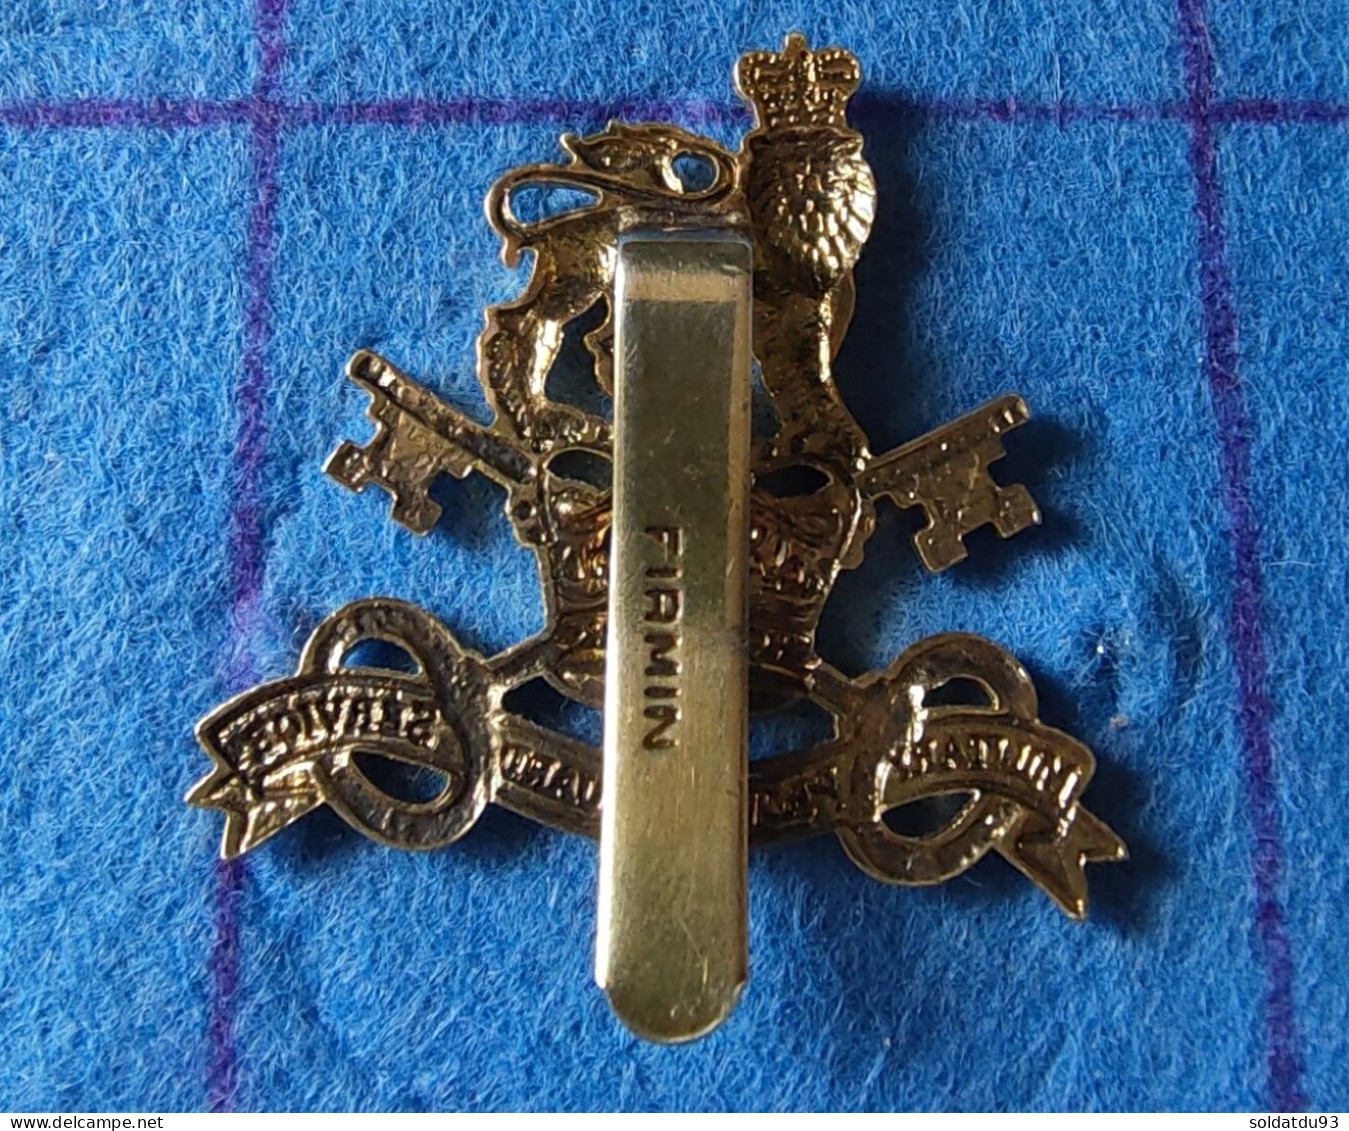 Insigne De Casquette  Military Provost Guard Service (MPGS) - 1939-45